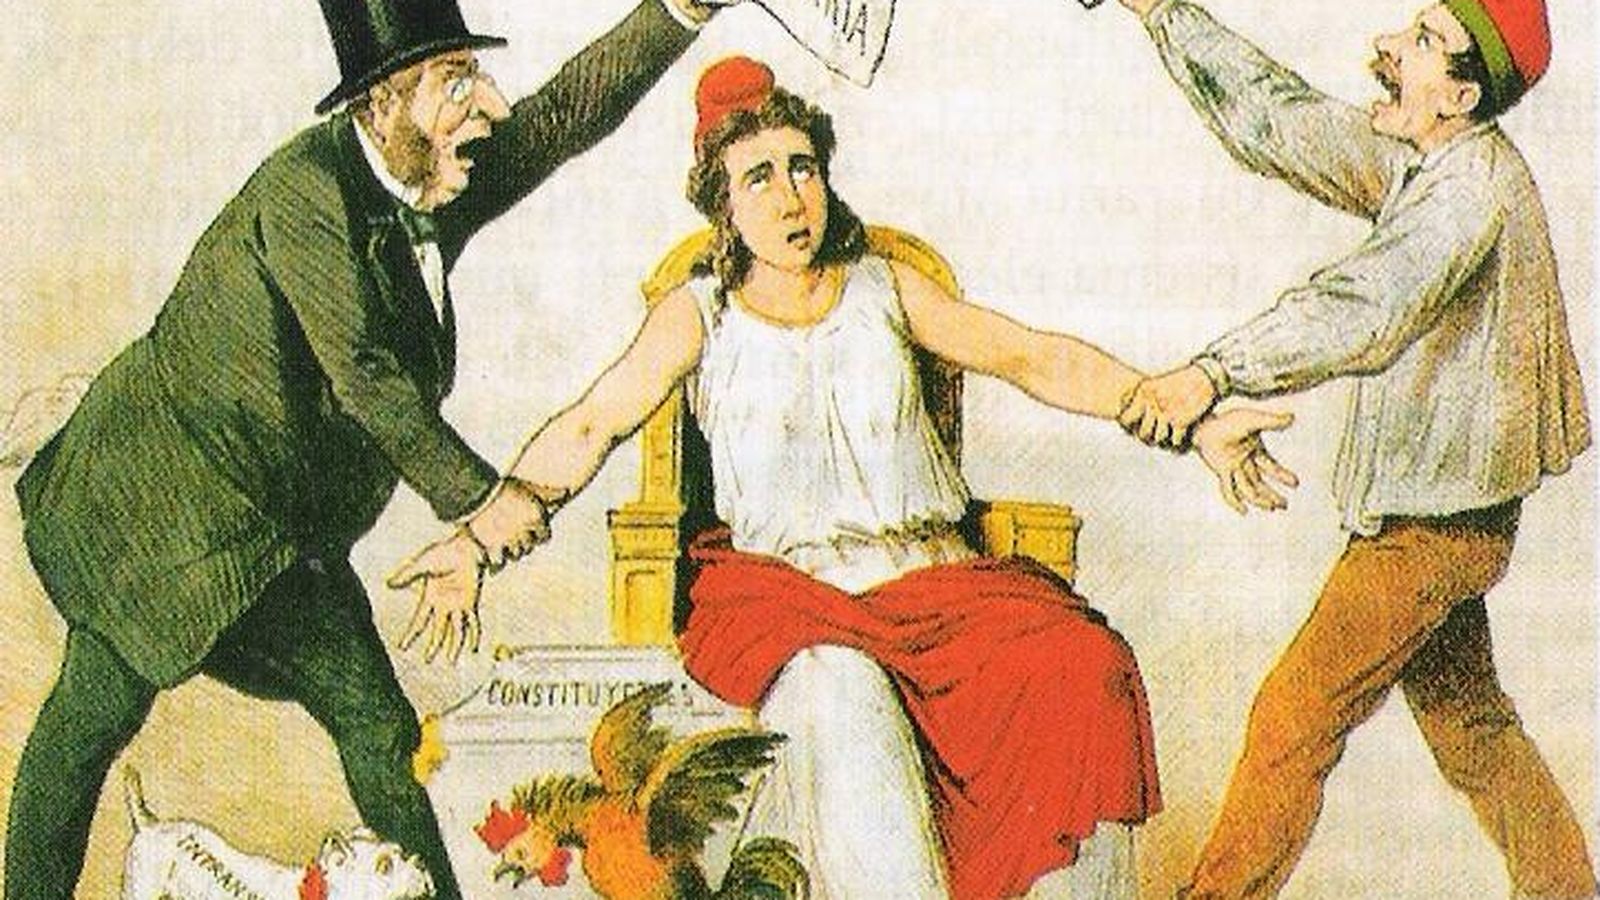 Foto: Viñeta de la revista satírica 'La Flaca' en la que se pelean los federalistas, representados por José María de Orense, y los unitarios, representados por Emilio Castelar.